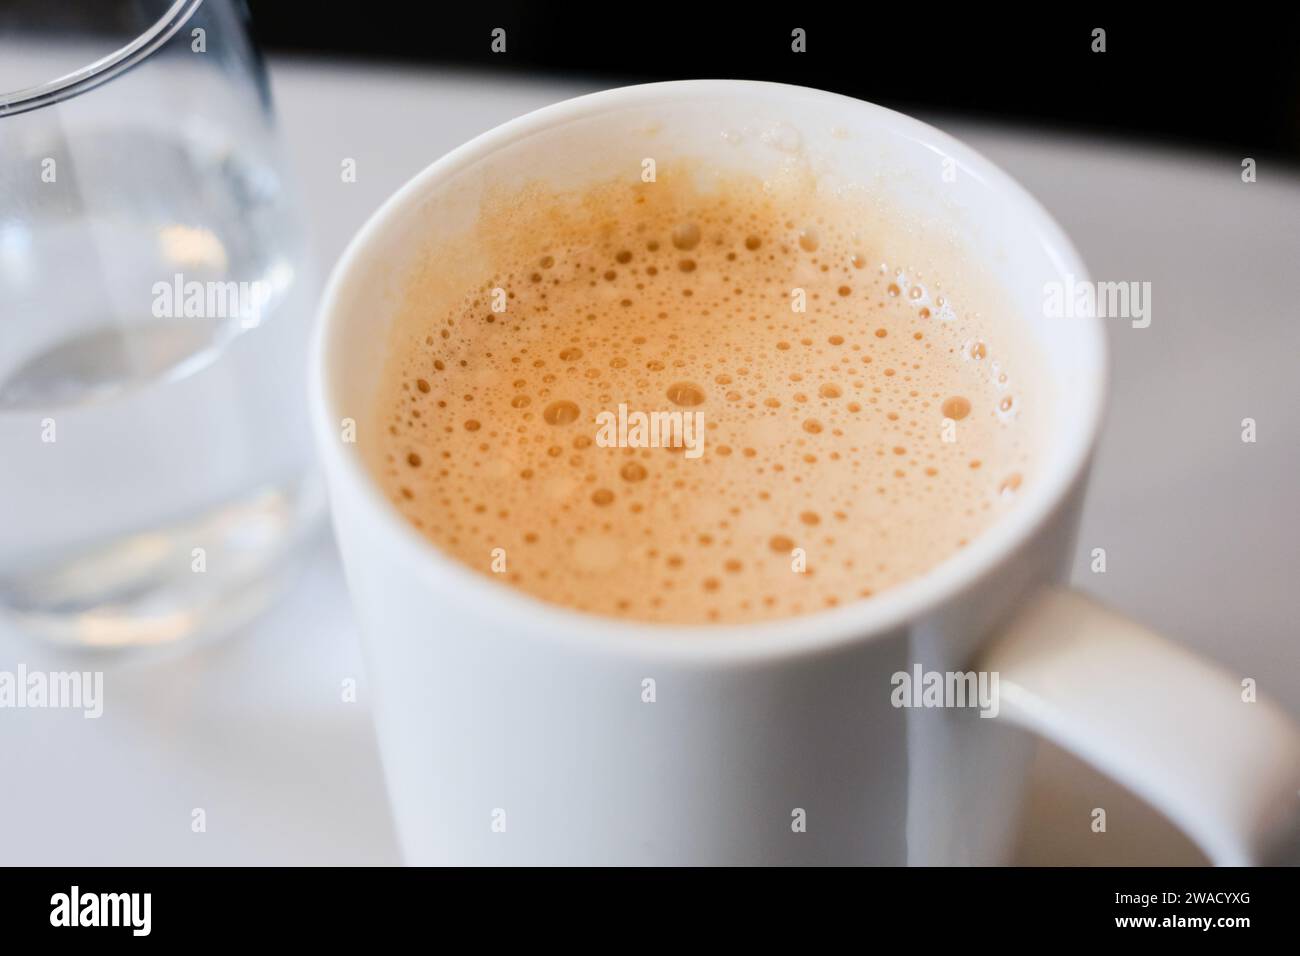 Una tazza di Tea tarik (tè malese estratto con latte evaporato o condensato), servita in una business class in rotta verso Kuala Lumpur da Sydney Foto Stock